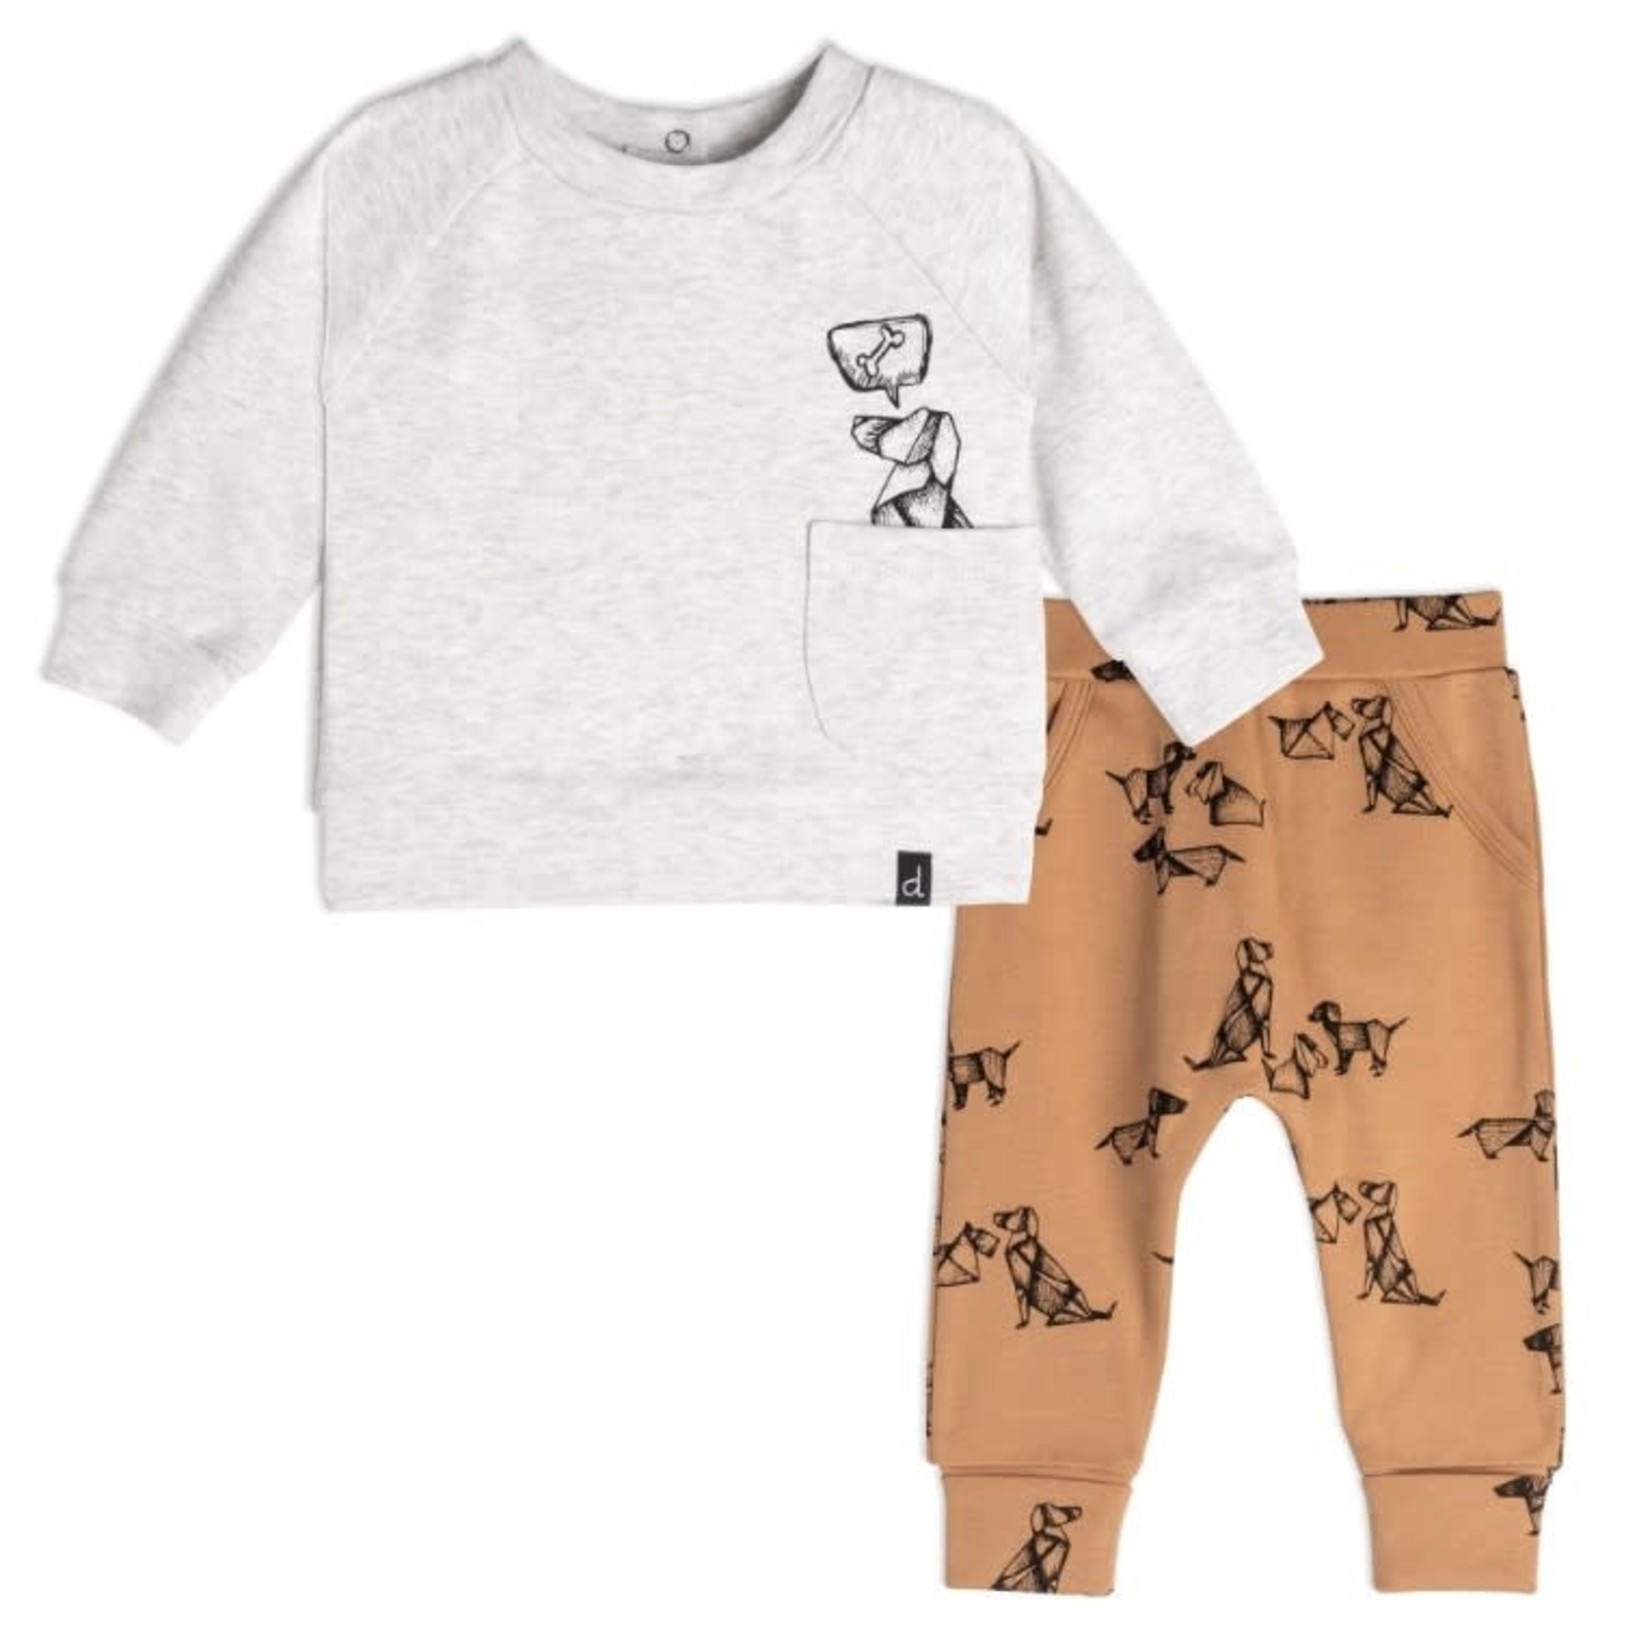 Deux par Deux DEUX PAR DEUX - Two-piece kit - Top and pants with printed dogs - Beige mix and brown